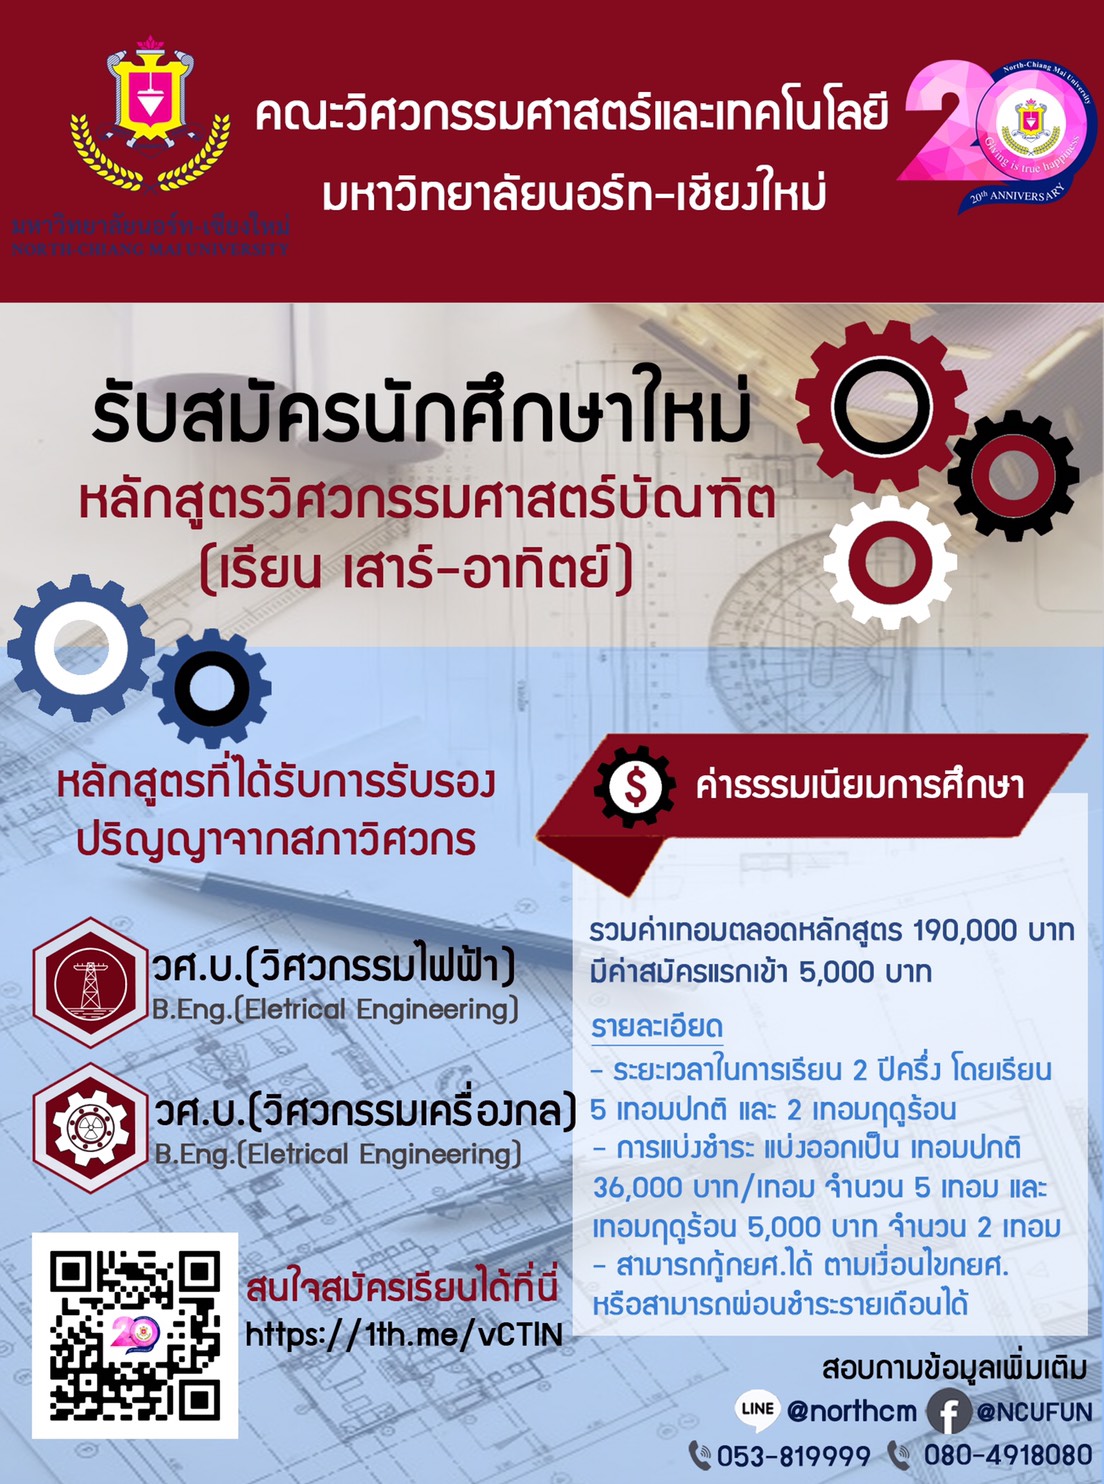 มหาวิทยาลัยนอร์ท-เชียงใหม่ รับสมัครนักศึกษาใหม่ 2563 (เรียน วันเสาร์-วัน อาทิตย์) - Chiang Mai News